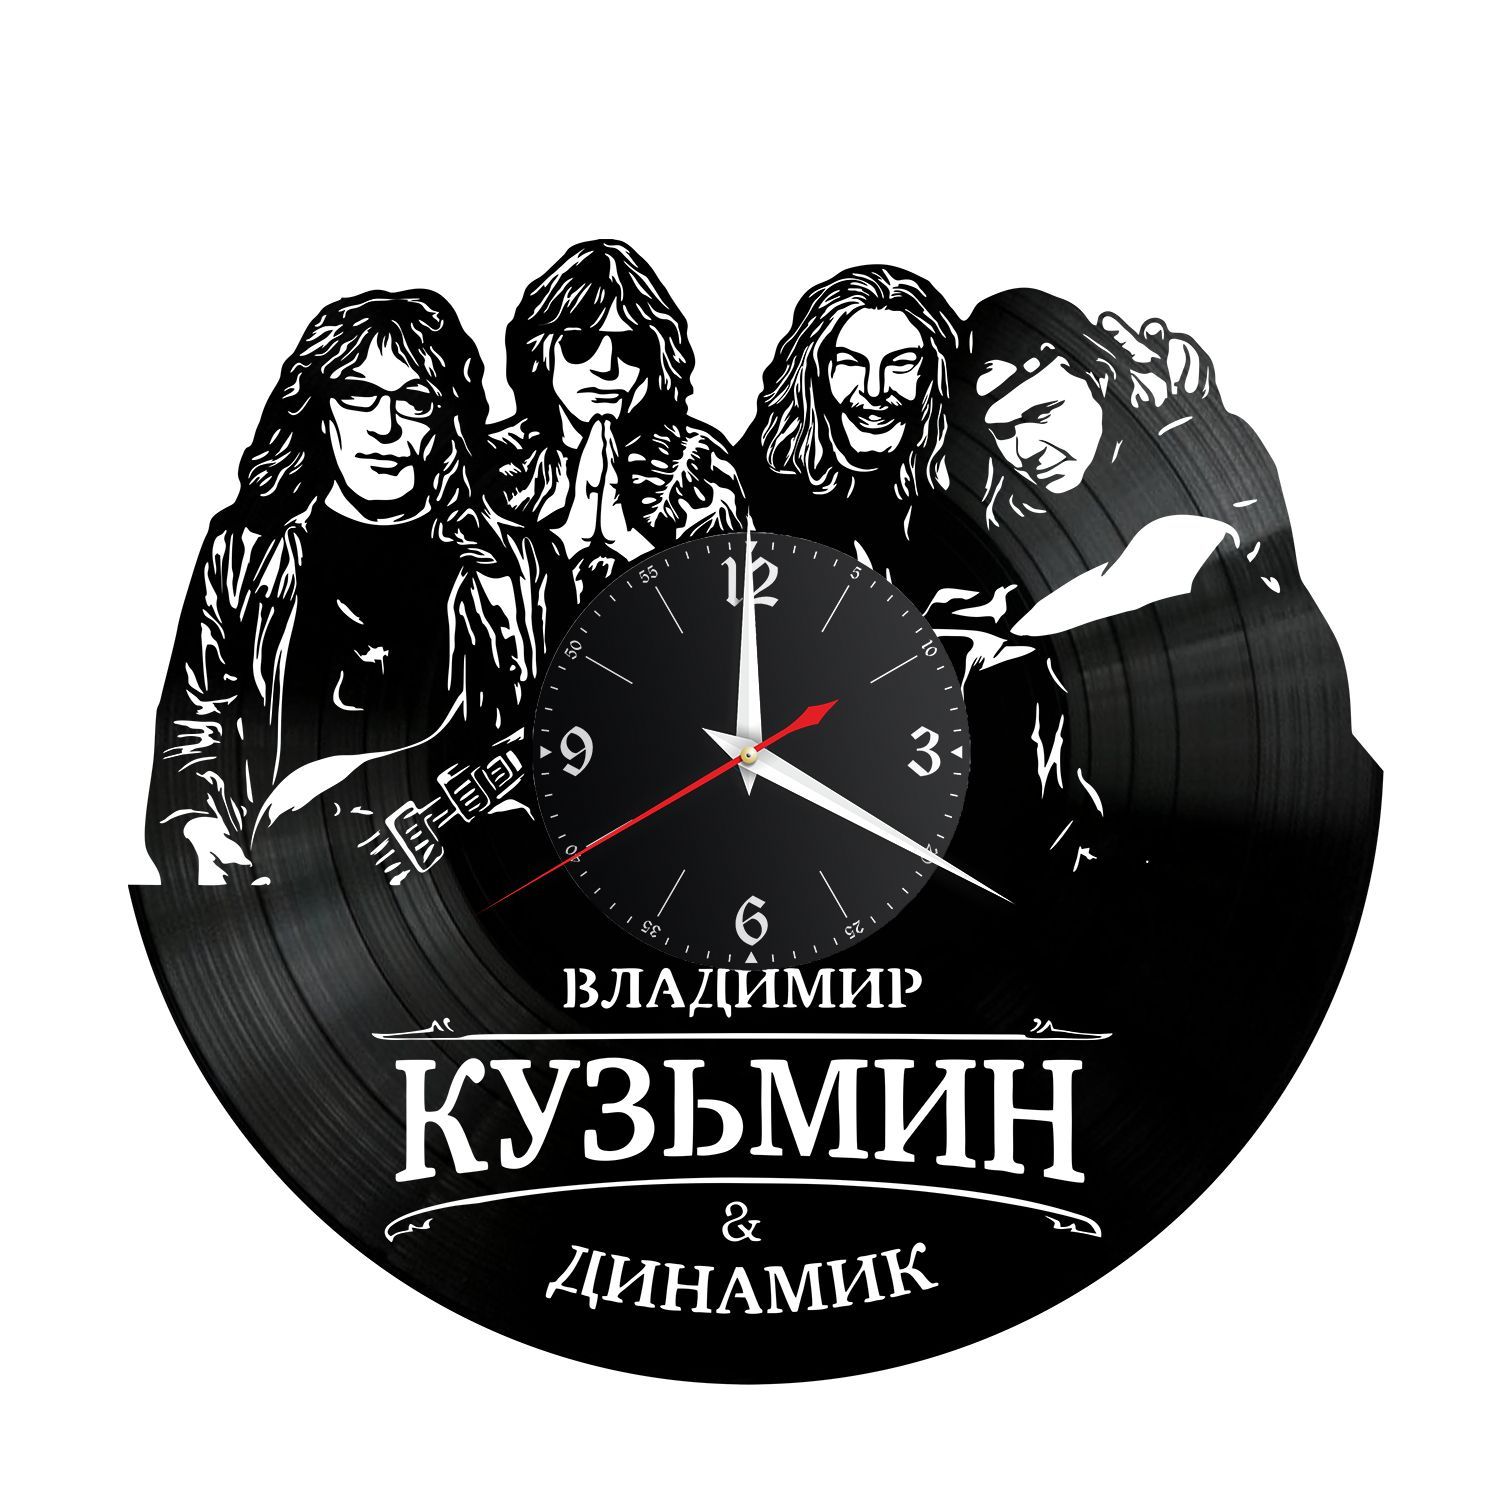 Часы настенные "Владимир Кузьмин" из винила, №3 VC-12213